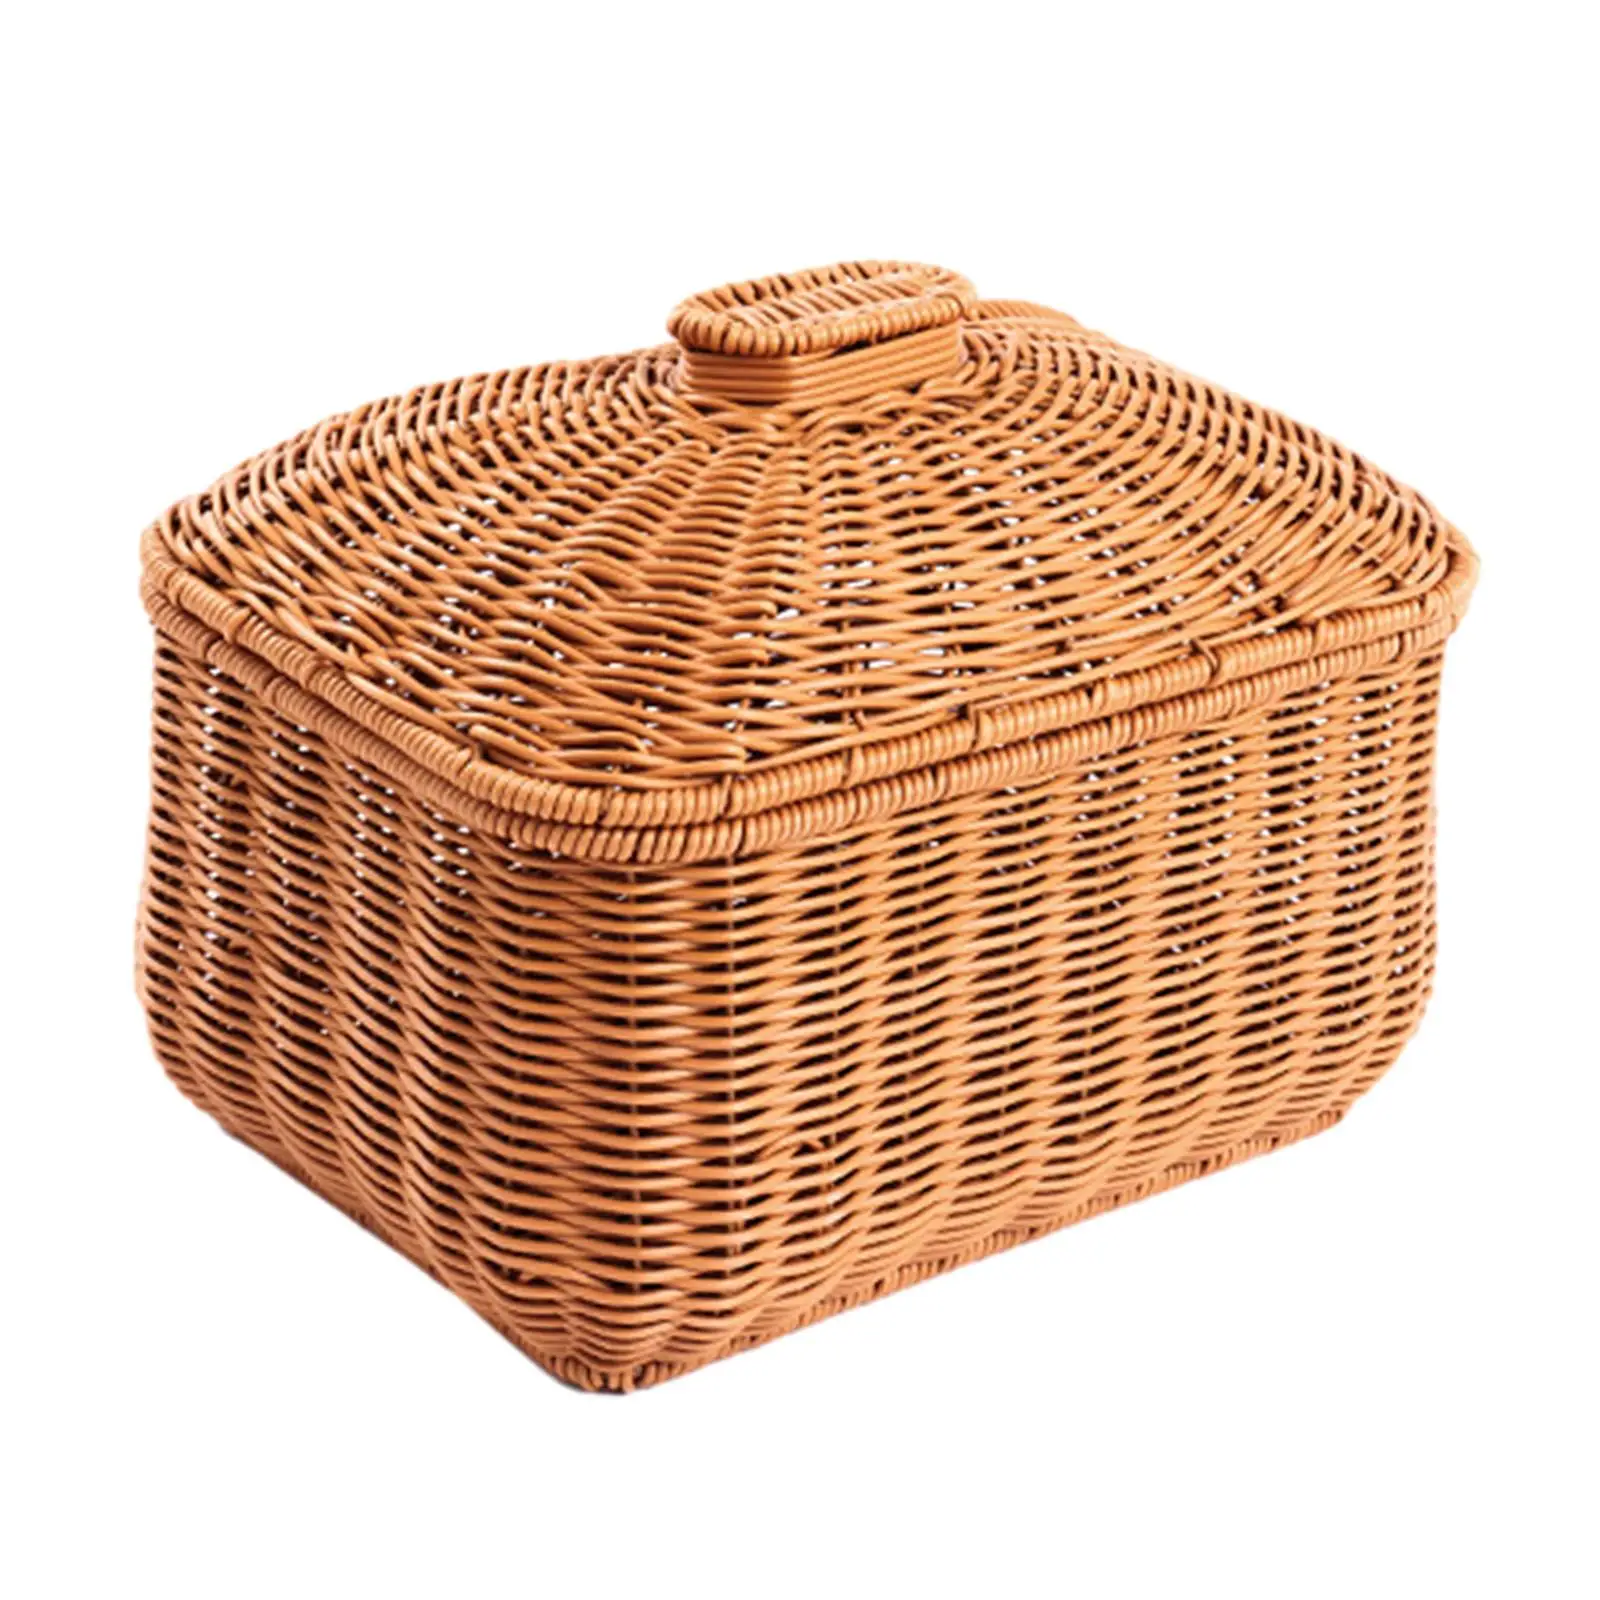 Handwoven Basket Home Décor Shelf Baskets Bin with Lid Food Storage Basket for Bathroom Living Room Bedroom Kitchen Shelves